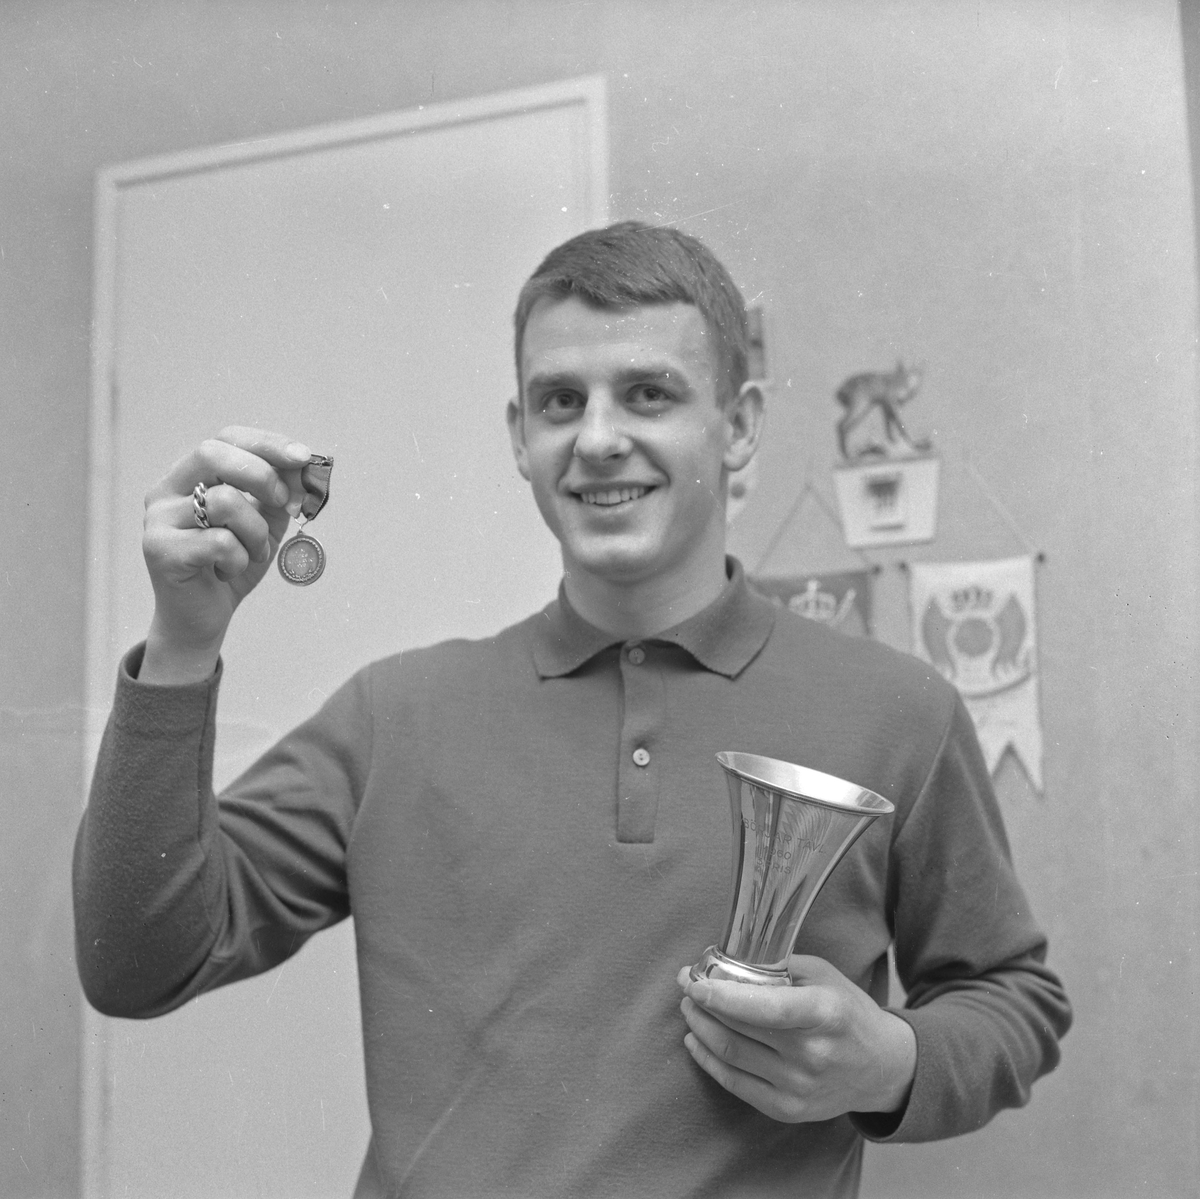 Del av material om Köpings Boxningsklubb. Runge Osis eller Eriksson Foto Hedfors januari 1964.